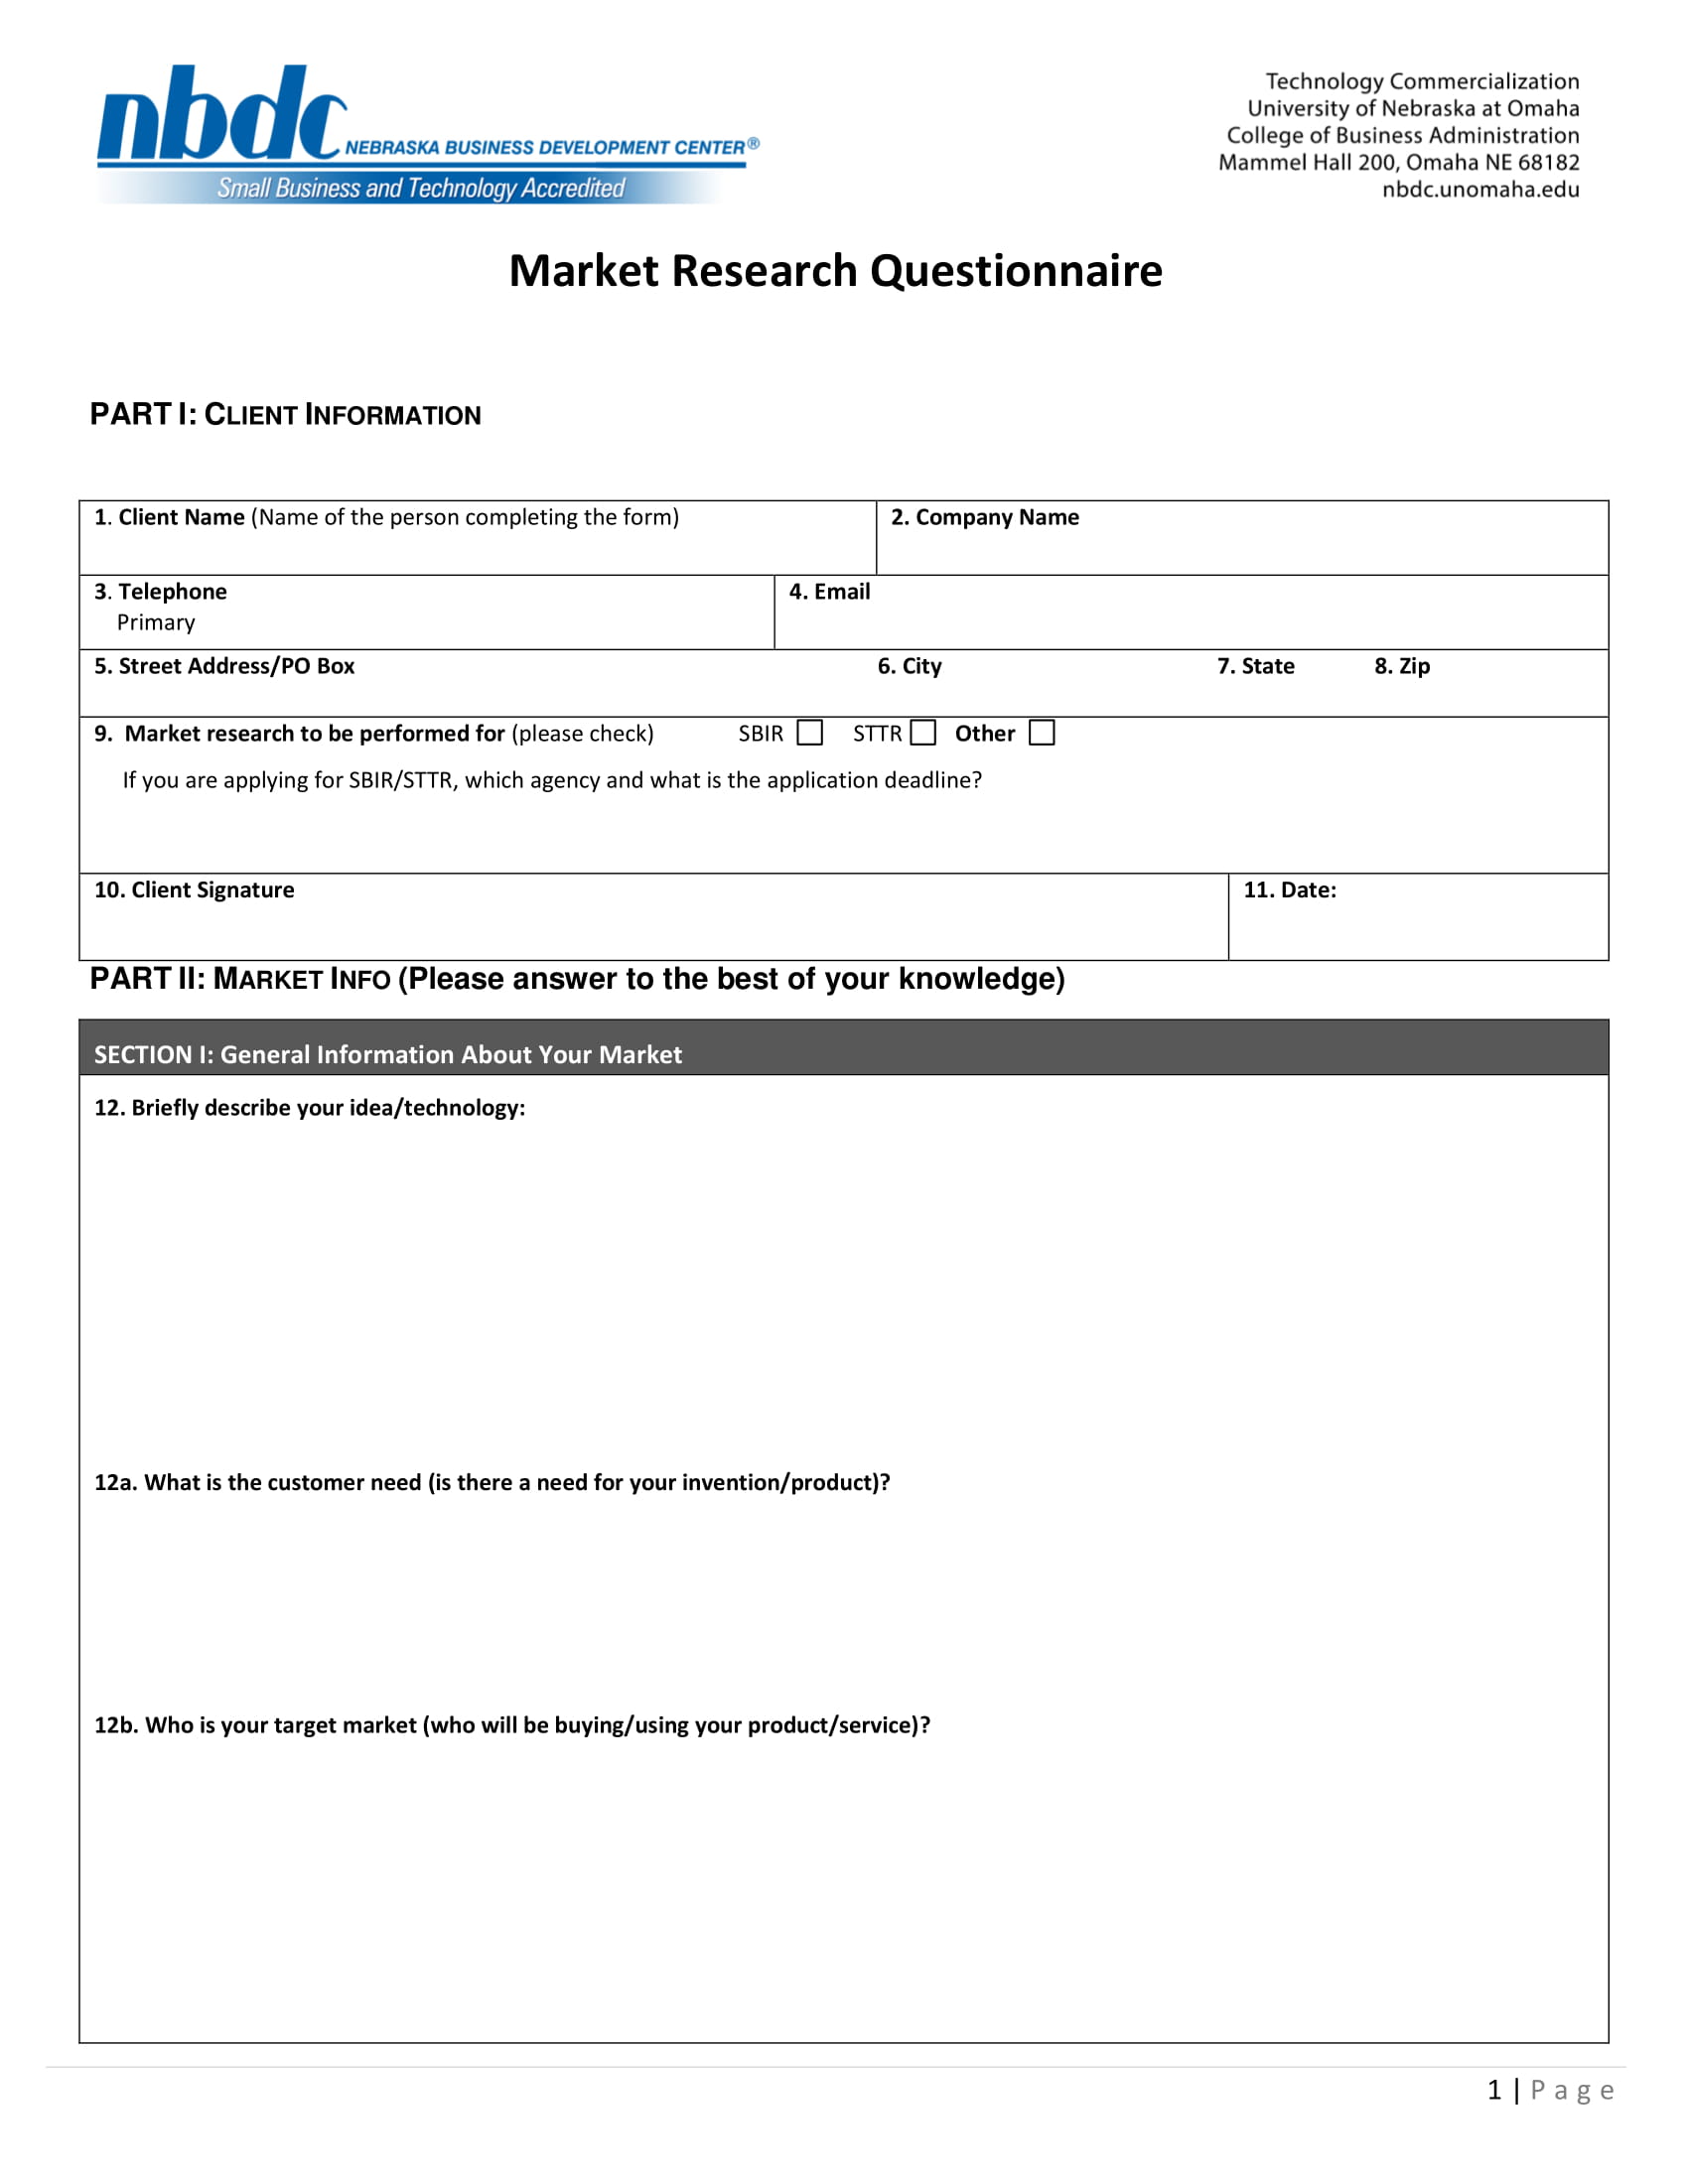 market research questionnaire survey form 1